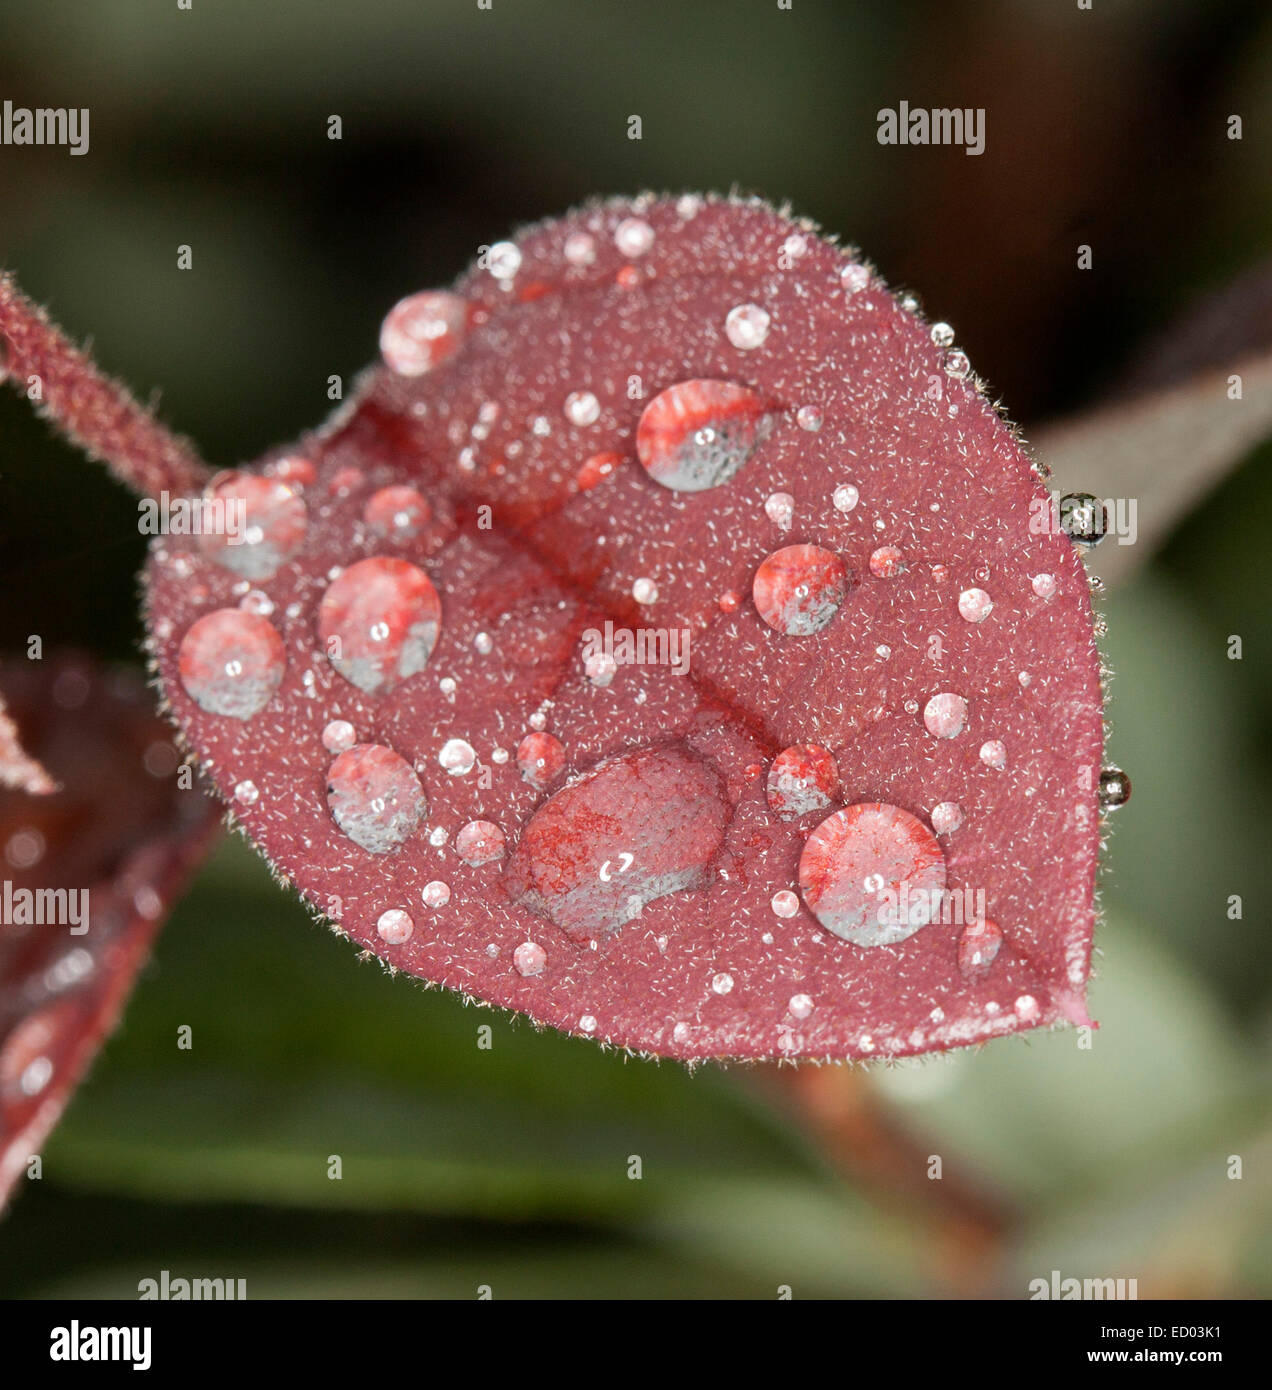 Rojo de hojas en forma de corazón de Loropetalum chinensis, fringe flor, con gotas de agua brillando como joyas -contra el verde oscuro bkgrd Foto de stock